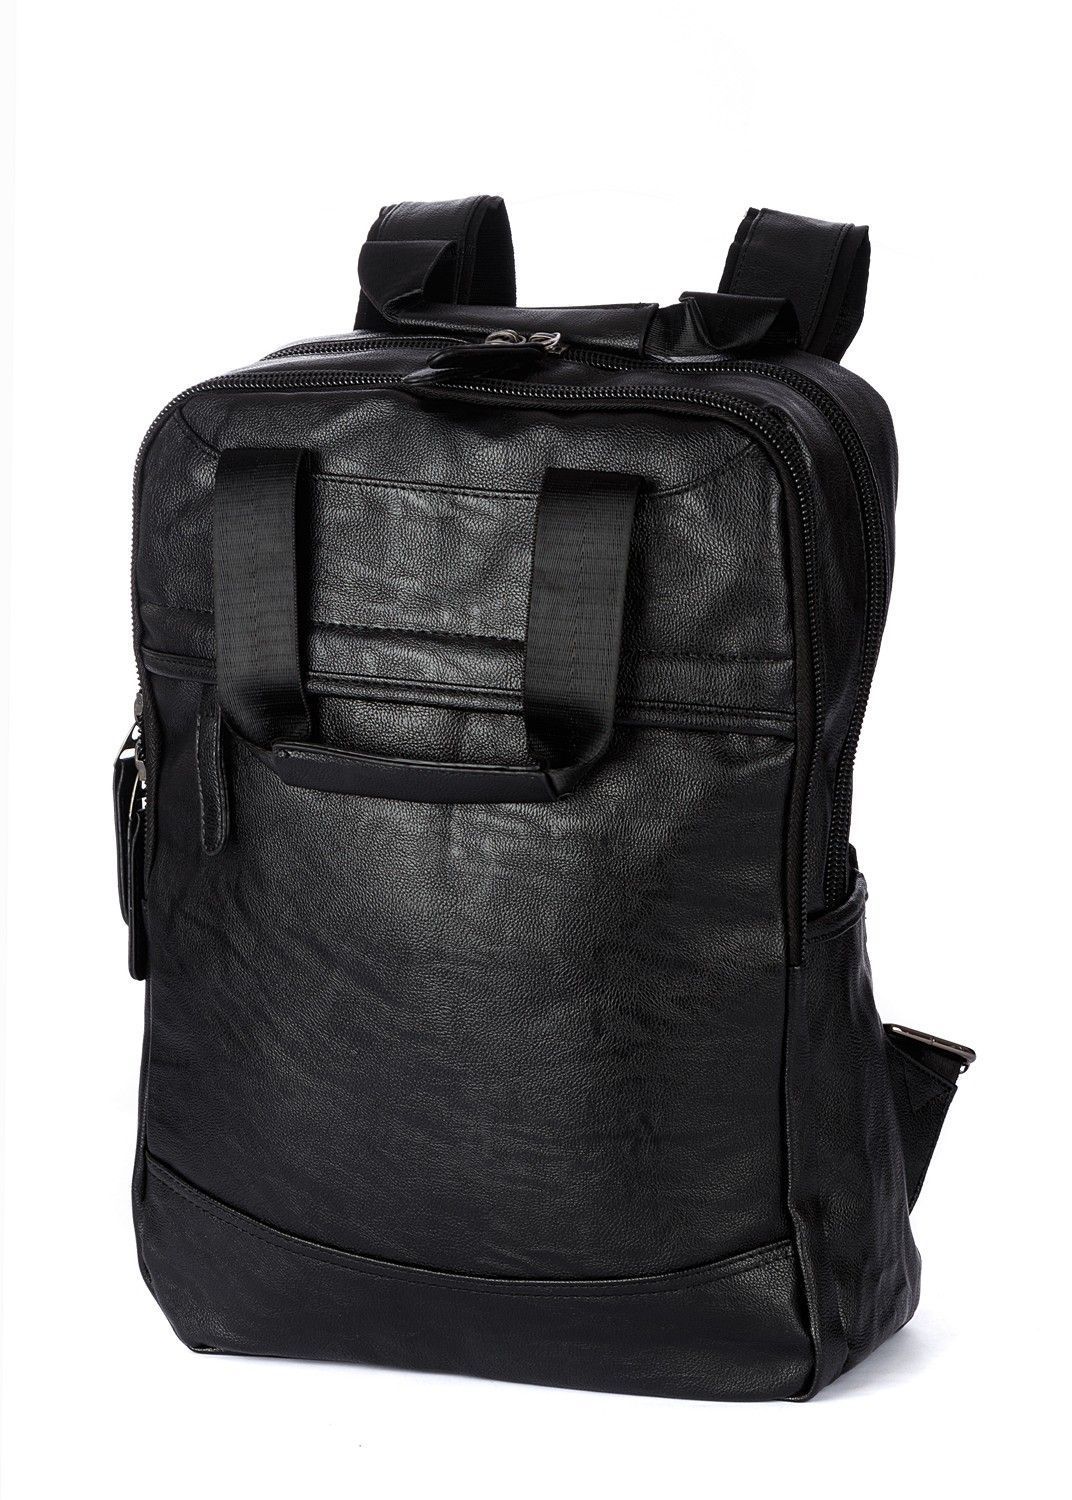 Рюкзак мужской / женский городской из искусственной кожи, черный, со стандартными лямками, объем 16л